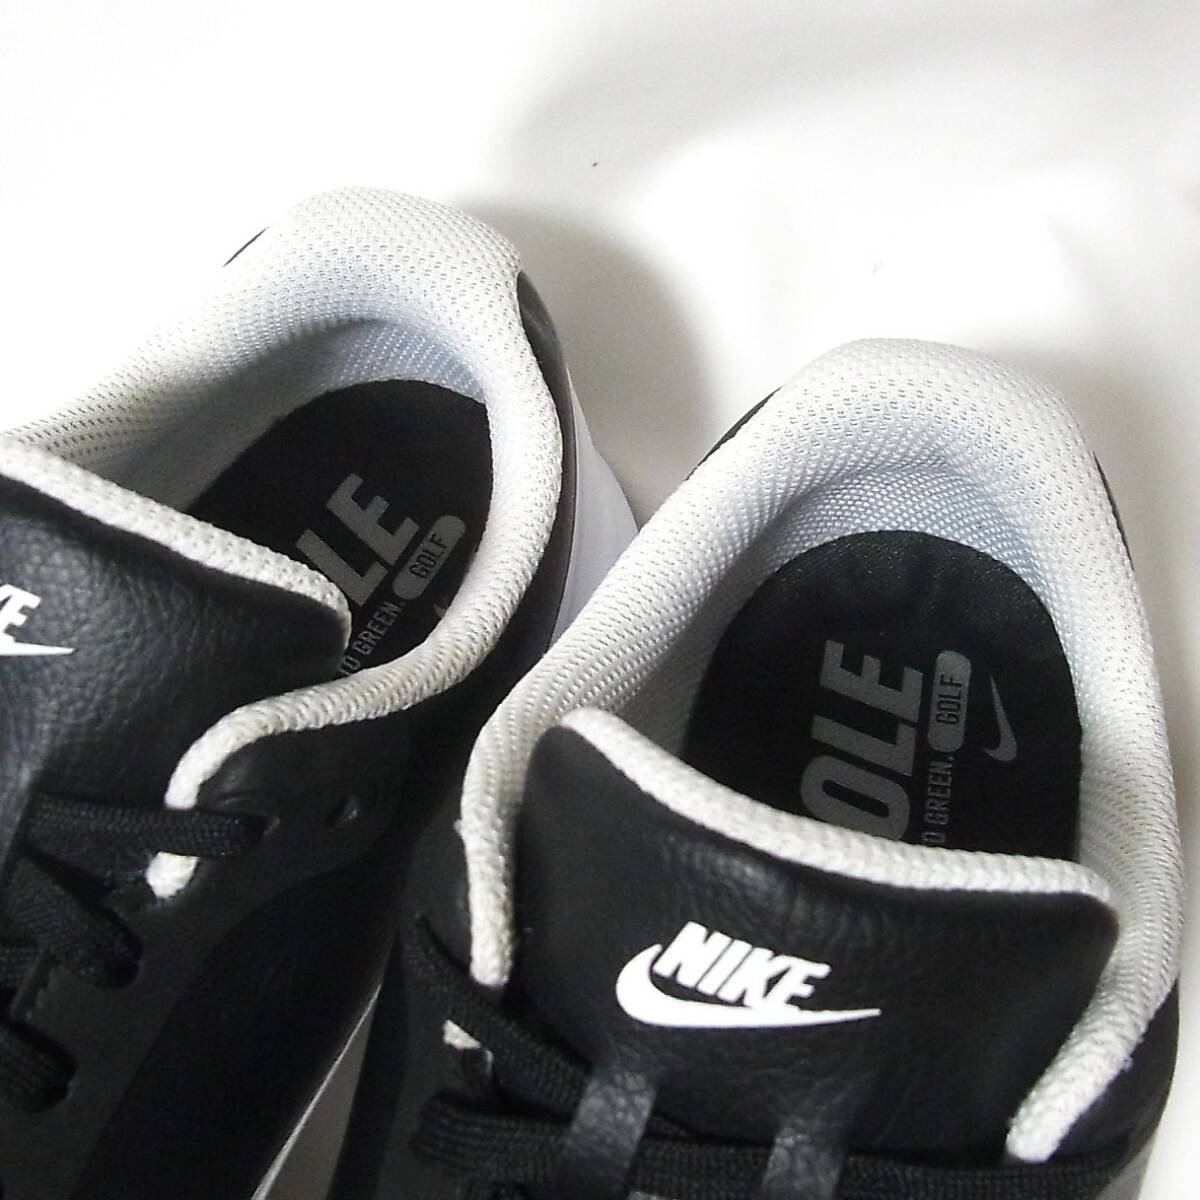 NIKE Nike GOLF Infinity G широкий 23.5cm* шиповки отсутствует туфли для гольфа * хорошая вещь круг мытье settled *2020 год модели * использование 2 раз 